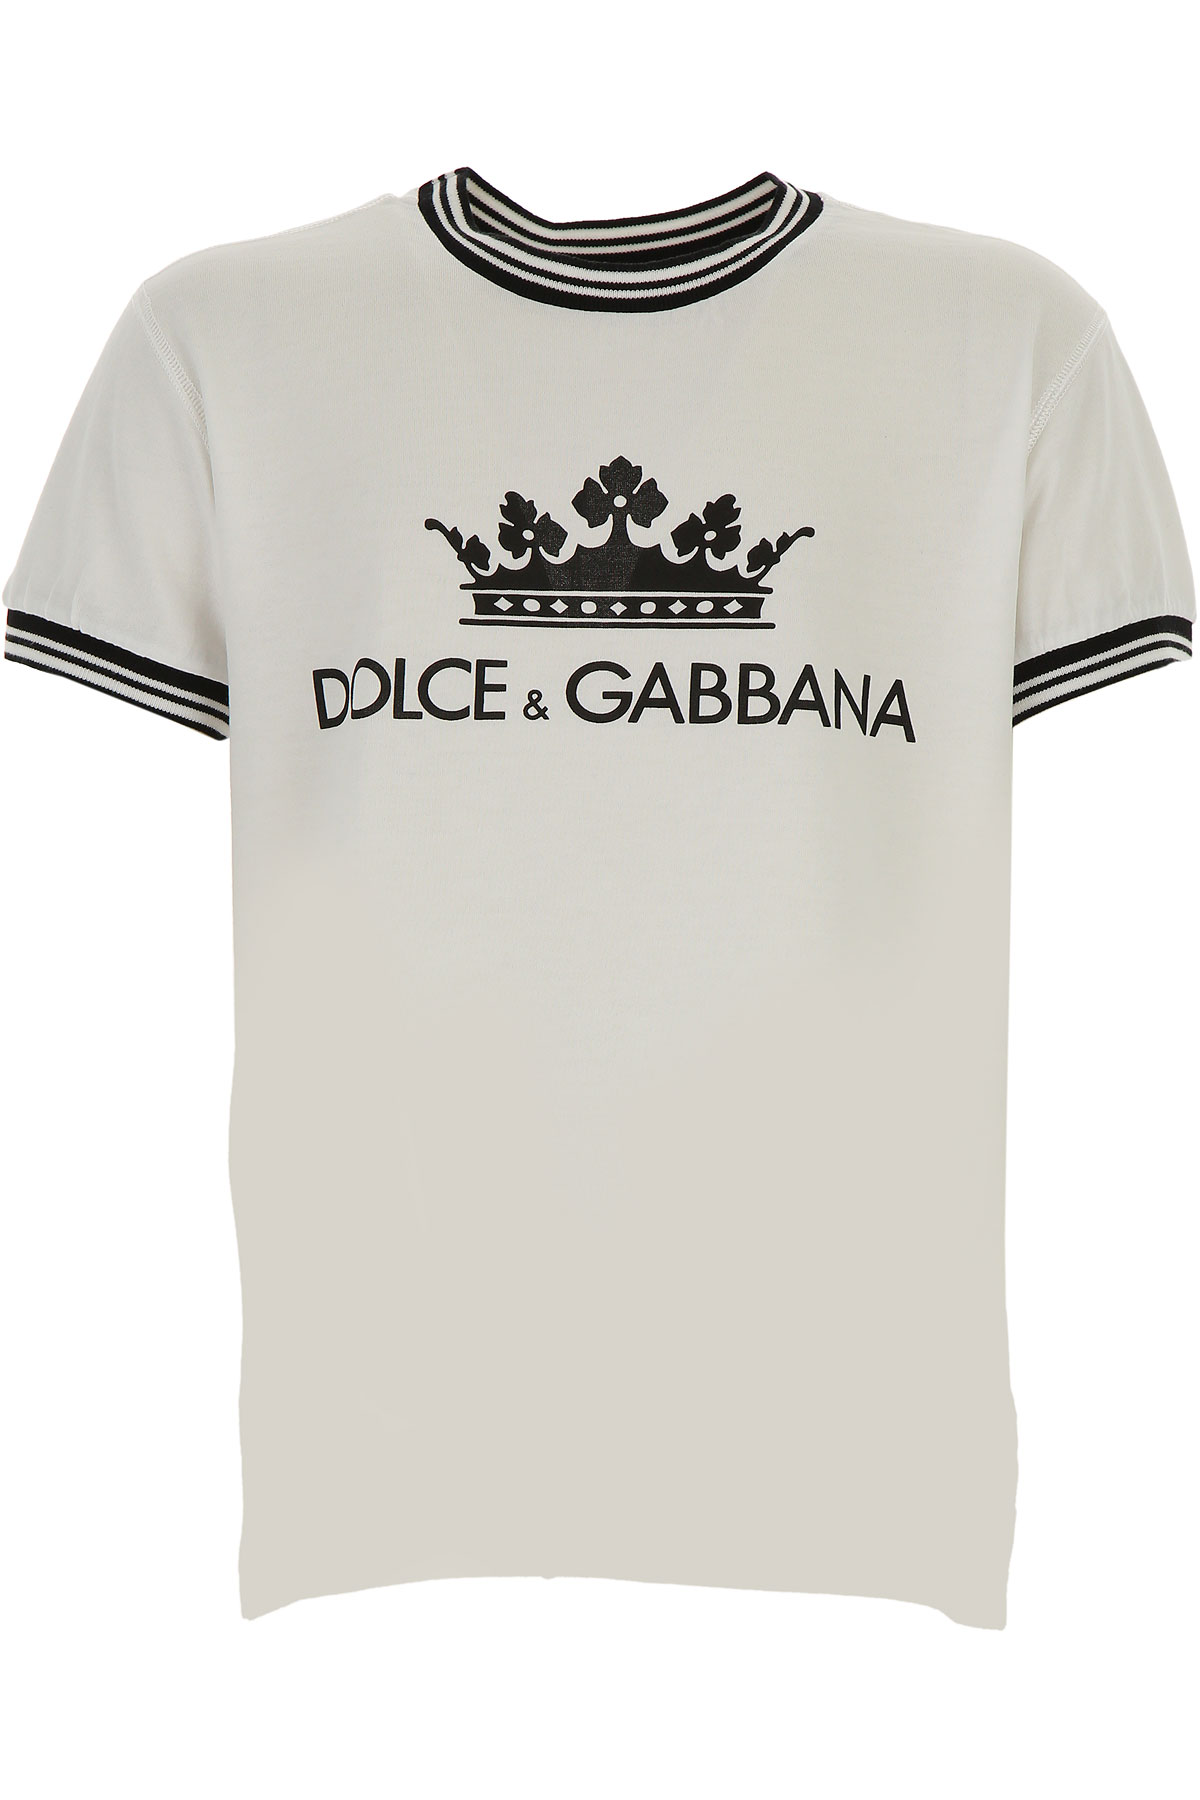 Dolce & Gabbana Kinder T-Shirt für Jungen Günstig im Outlet Sale, Weiss, Baumwolle, 2017, 10Y 5Y